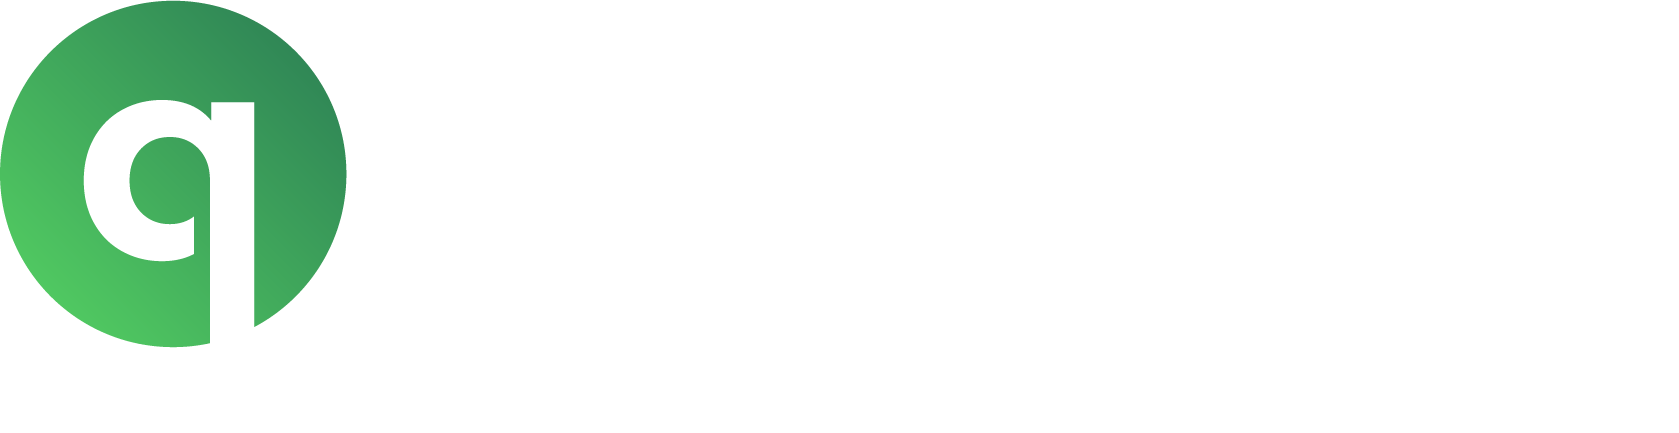 TM Quality and Environment wht RGB